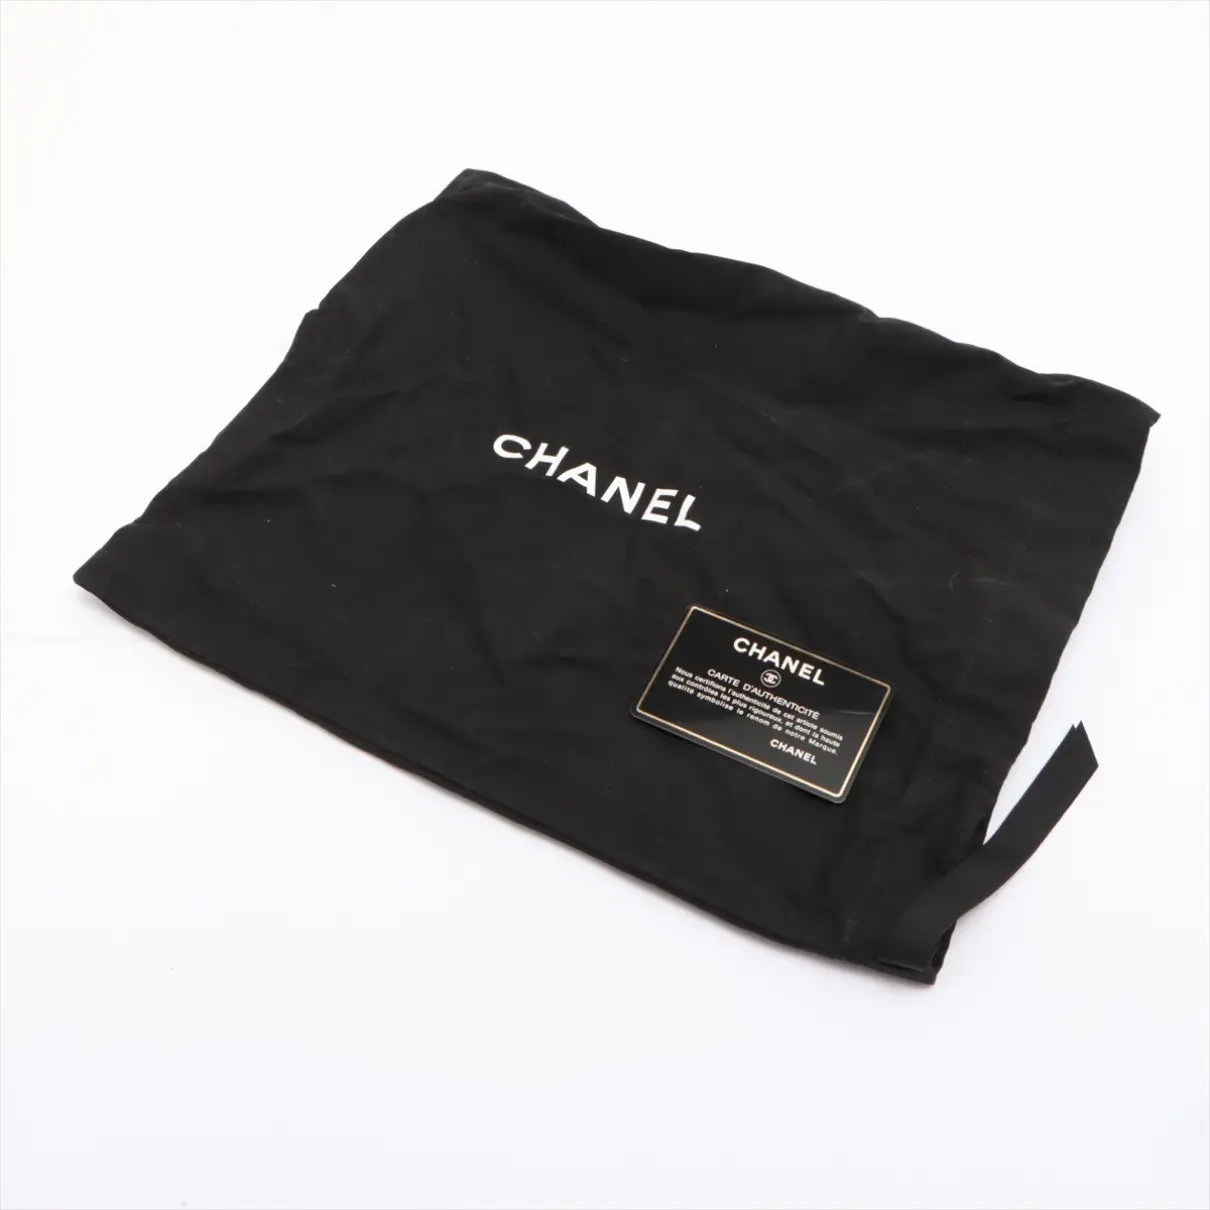 Buy Chanel Diana leather handbag online - Vintage